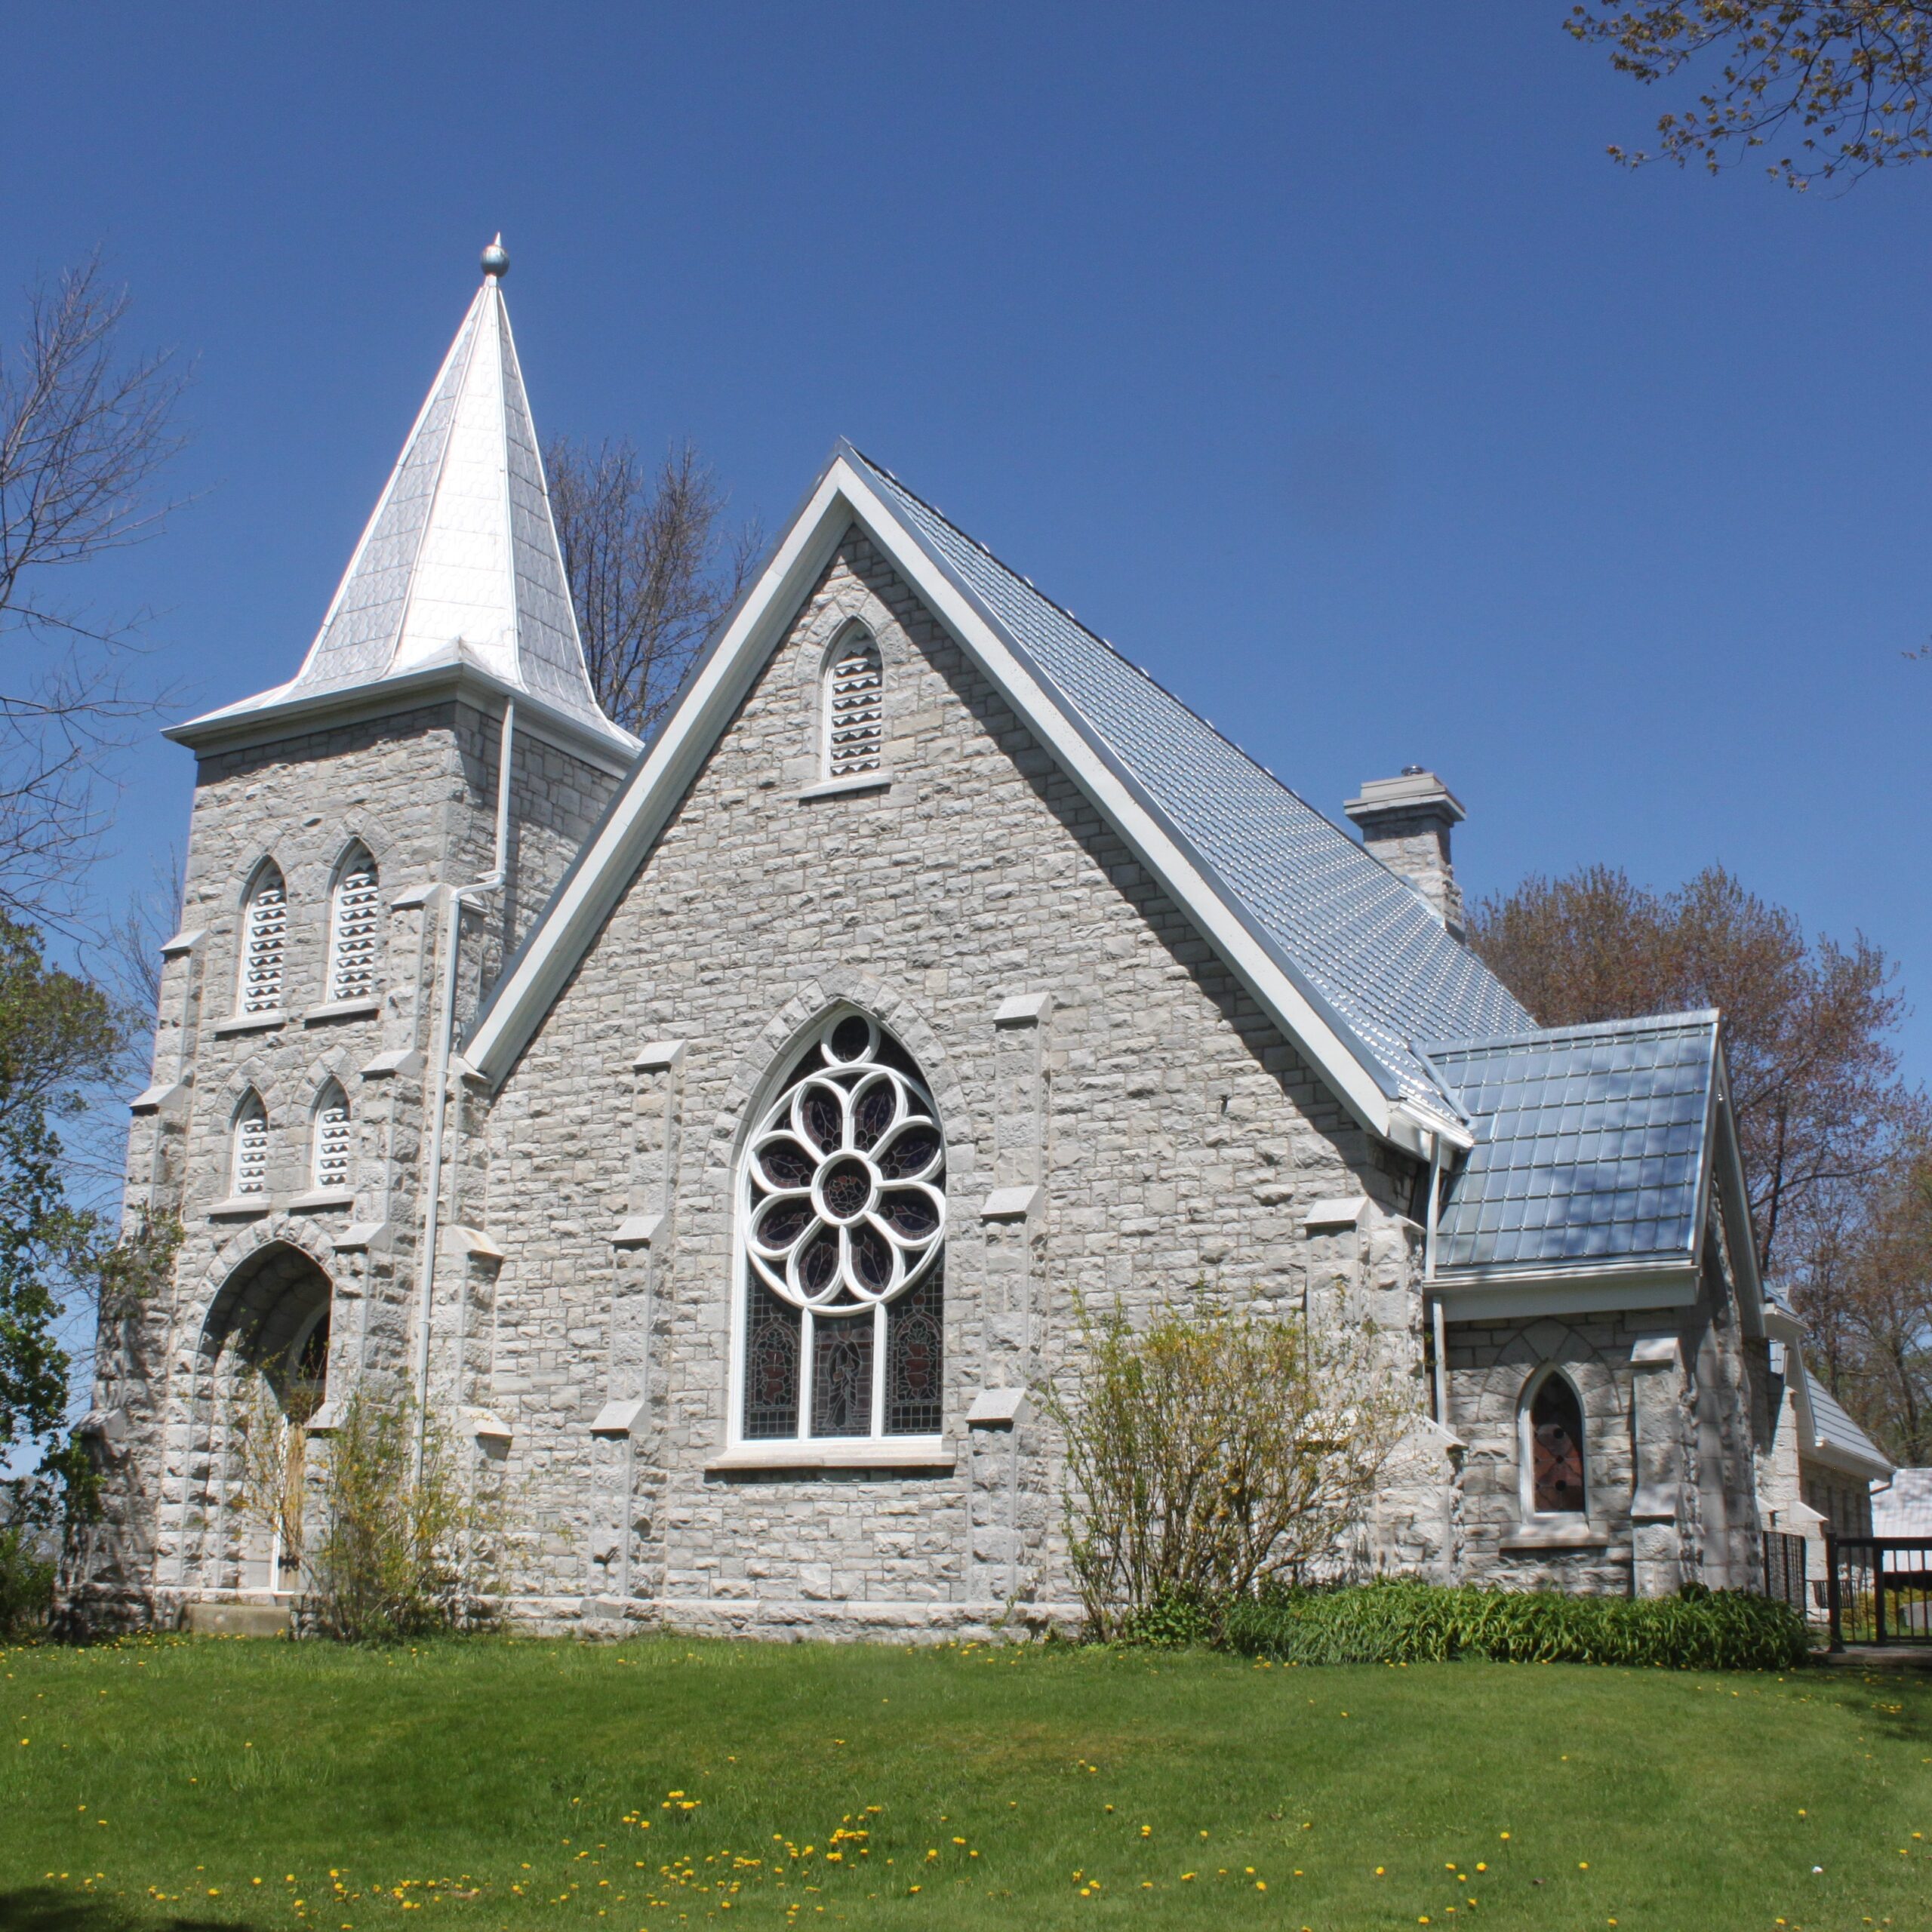 St. Paul's Presbyterian Church